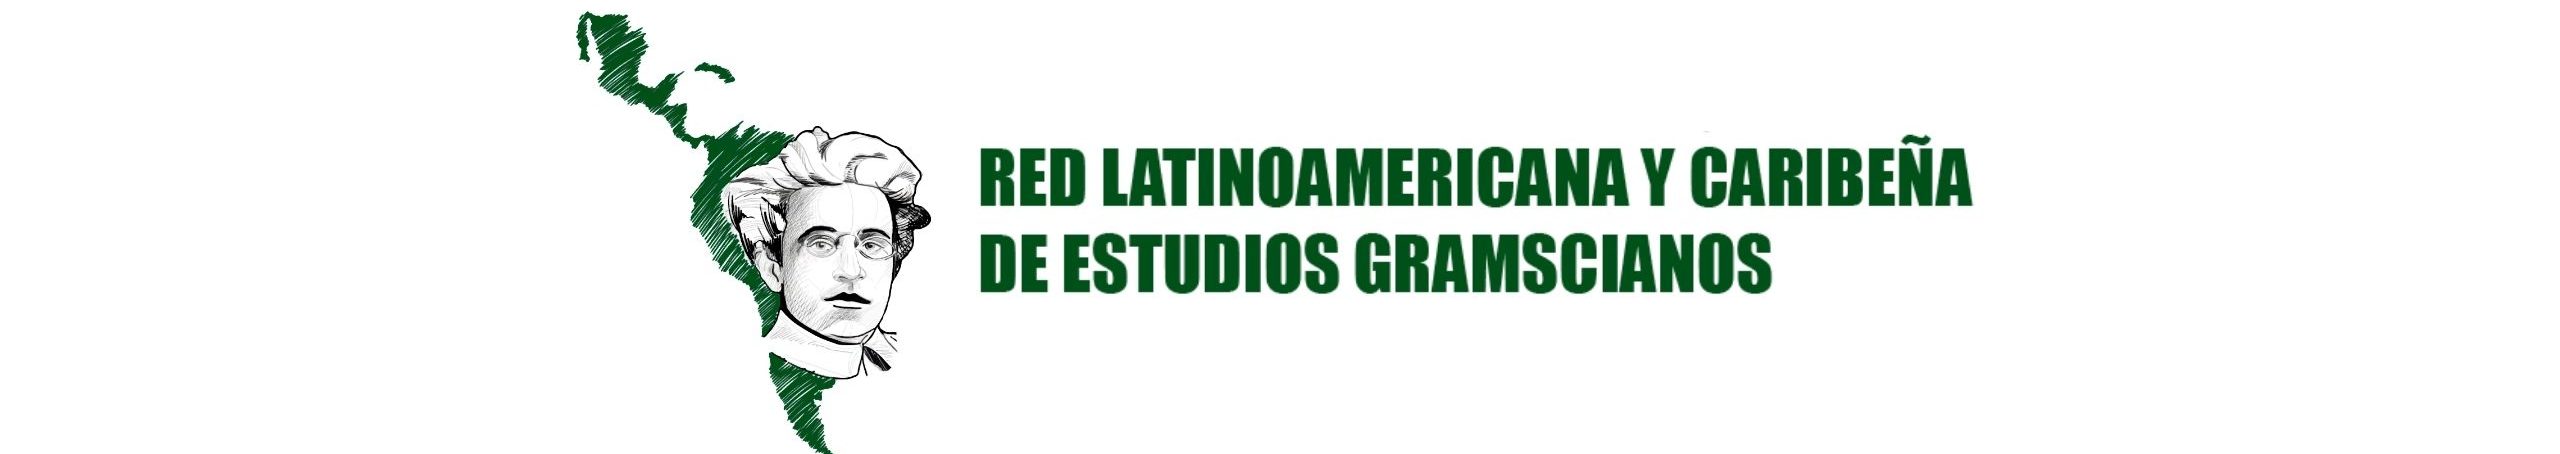 Red Latinoamericana y Caribeña de Estudios Gramscianos